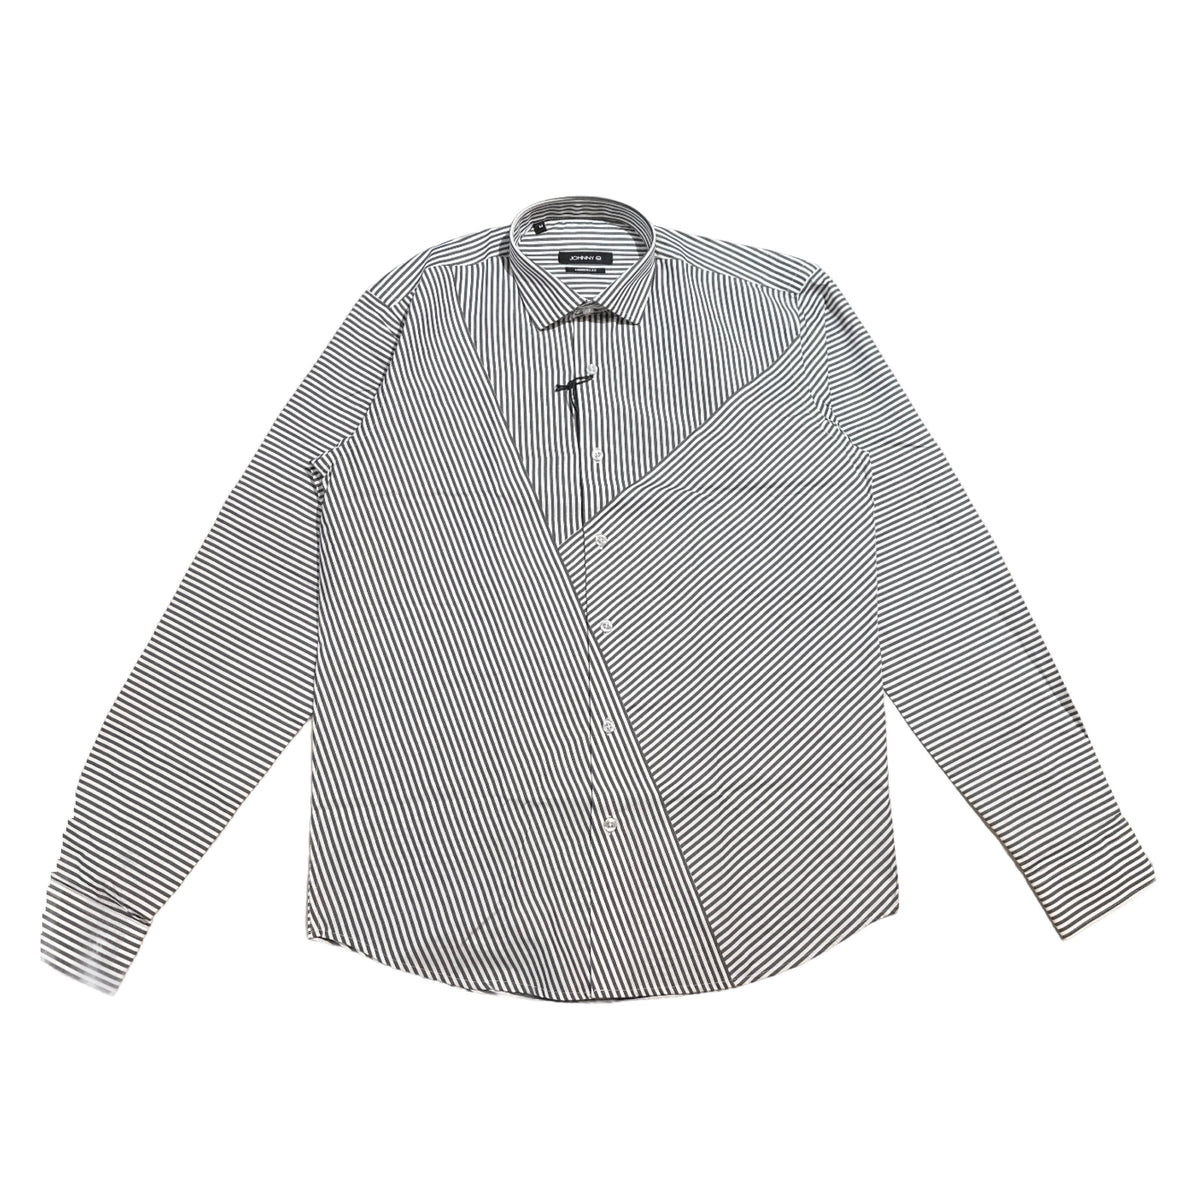 Johnny Q JQ 1008-D White/Black Button Up Shirt - Dudes Boutique